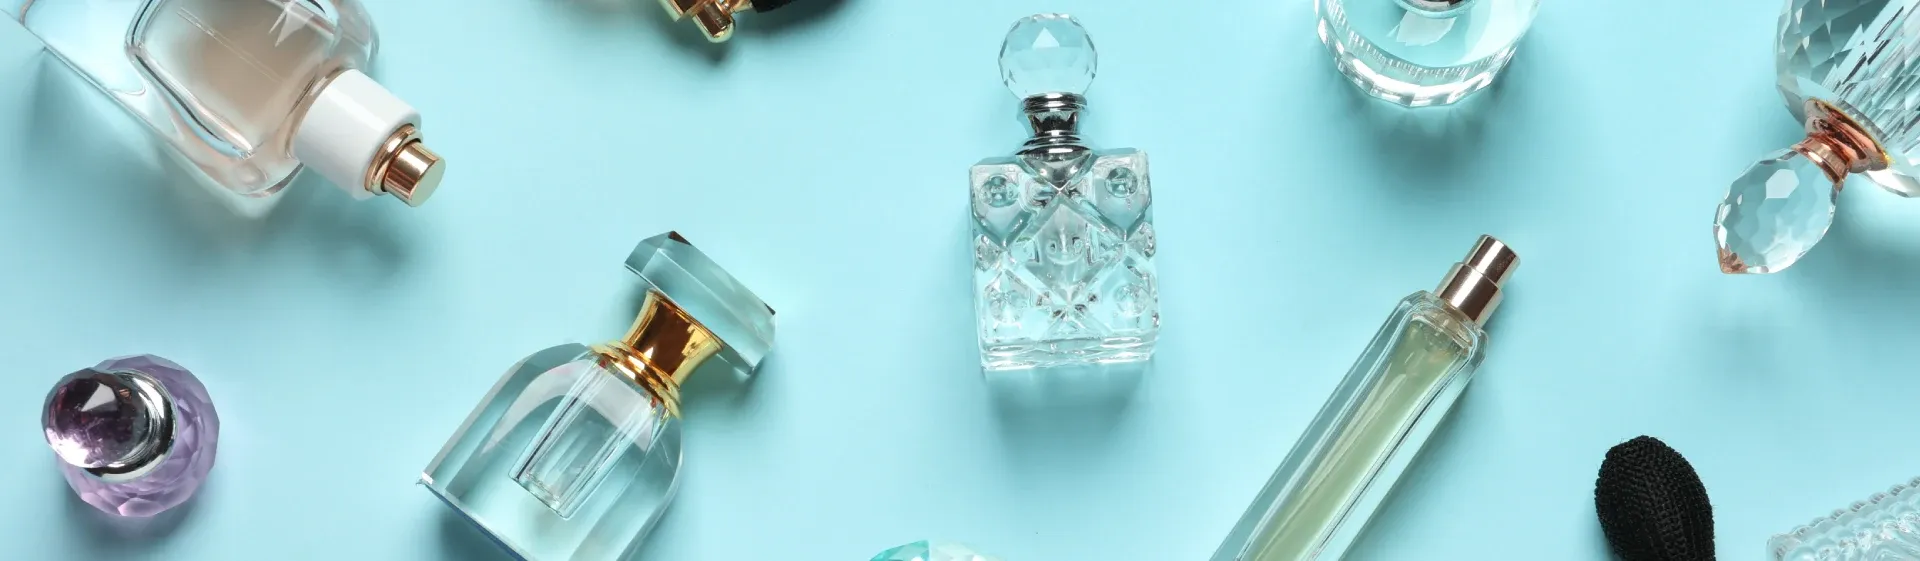 Capa do post: Perfumes importados baratos: 6 fragrâncias que cabem no bolso